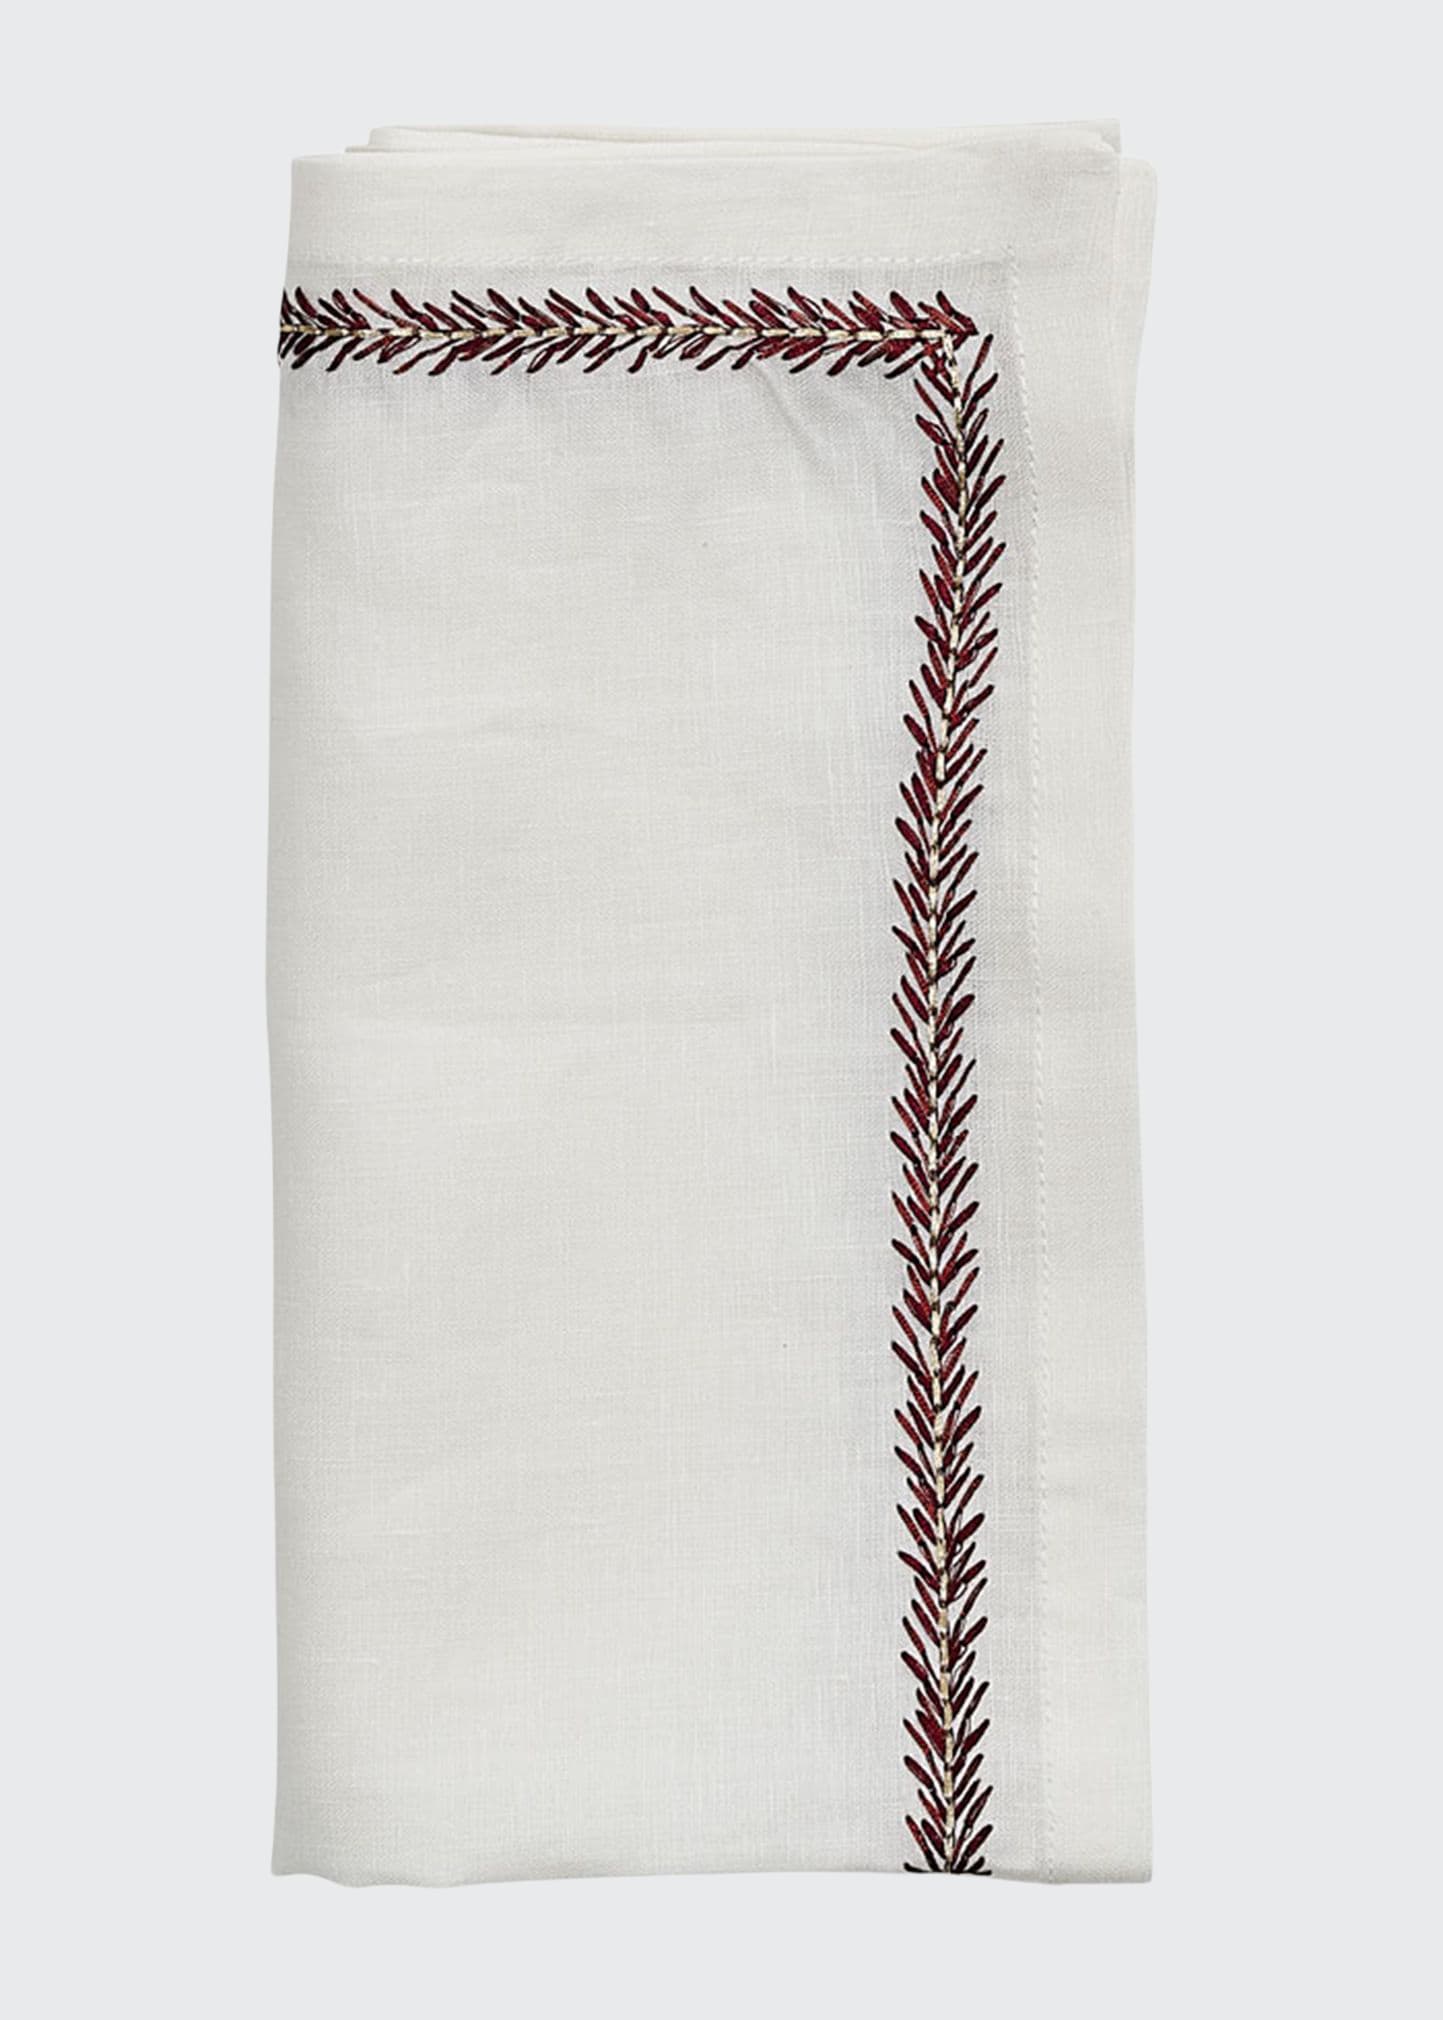 Kim Seybert Jardin Linen Napkin In White/red